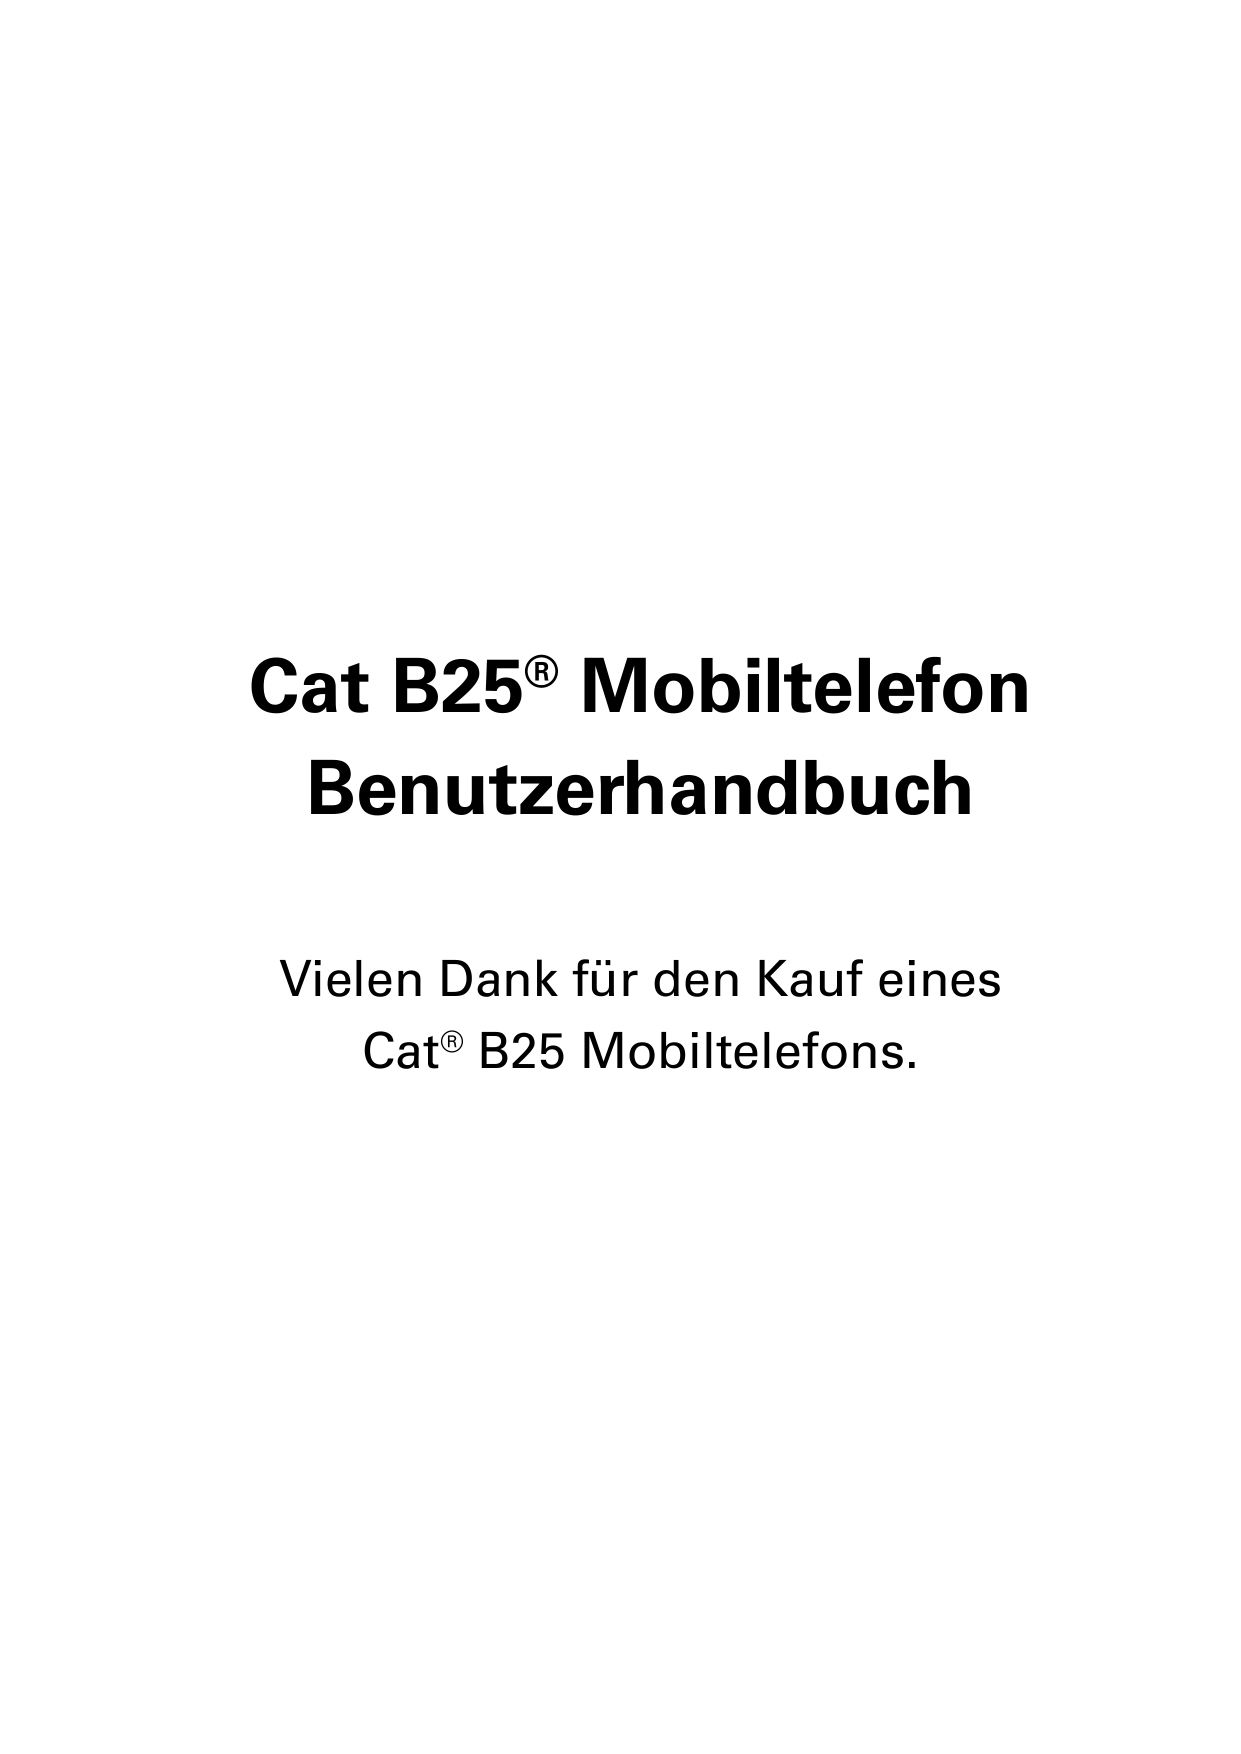 Cat B25® MobiltelefonBenutzerhandbuchVielen Dank für den Kauf einesCat® B25 Mobiltelefons.